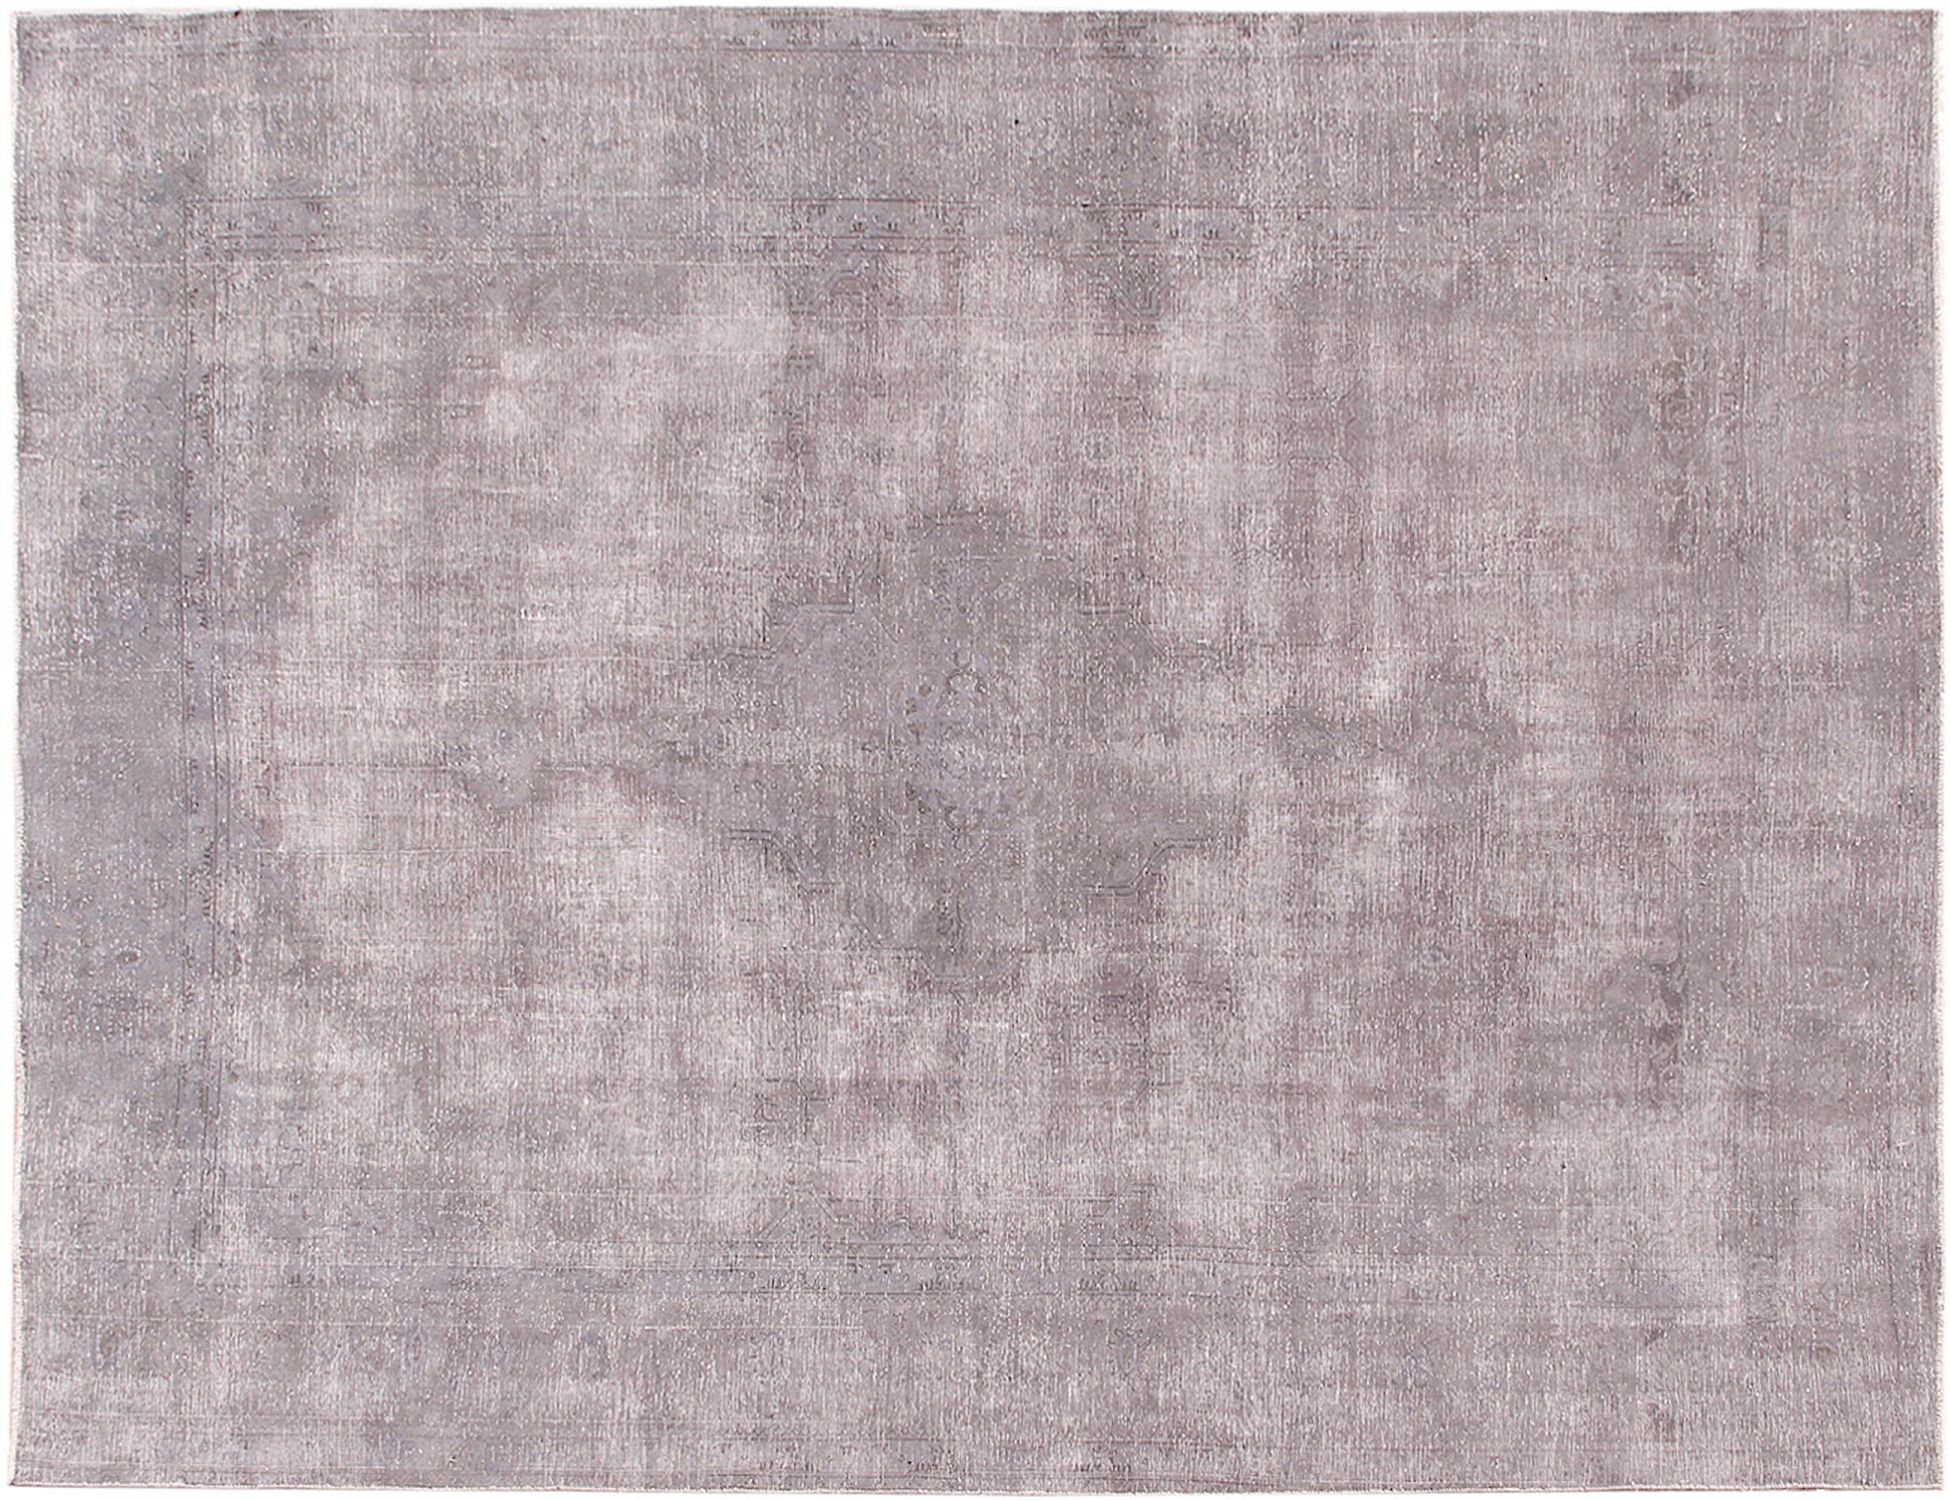 Persischer Vintage Teppich  grau <br/>375 x 220 cm